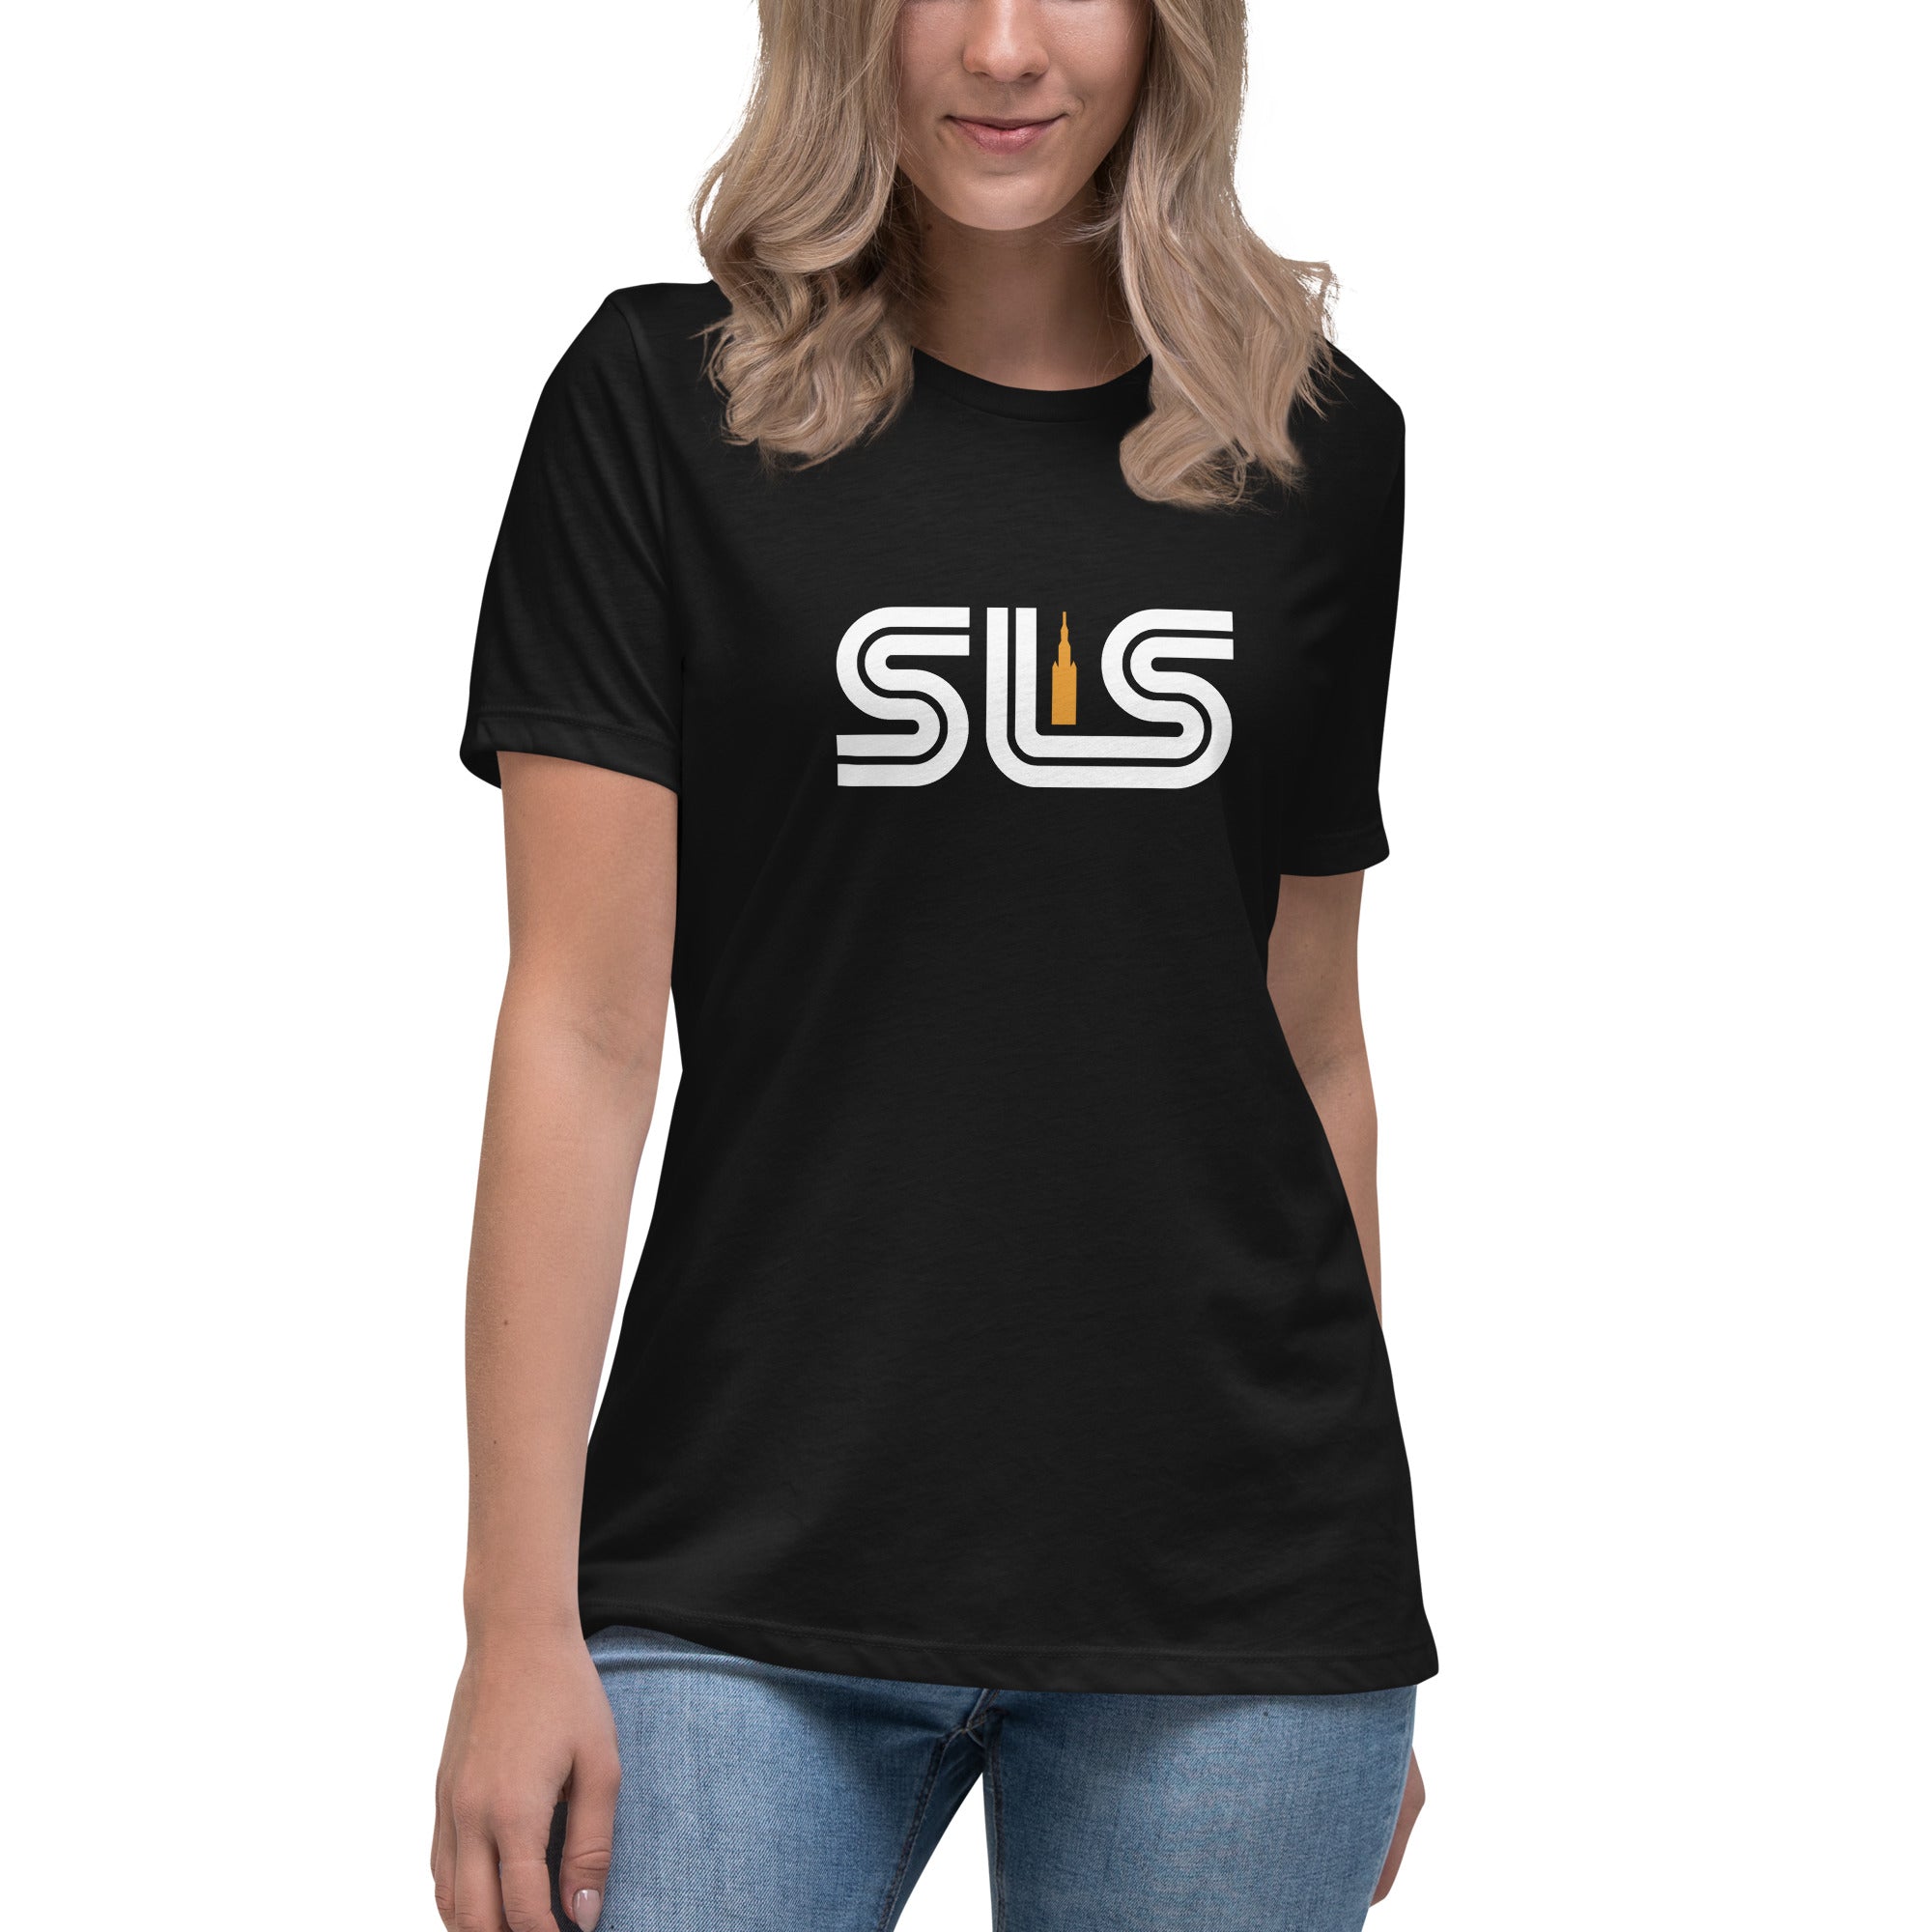 SLS - Women's T-Shirt